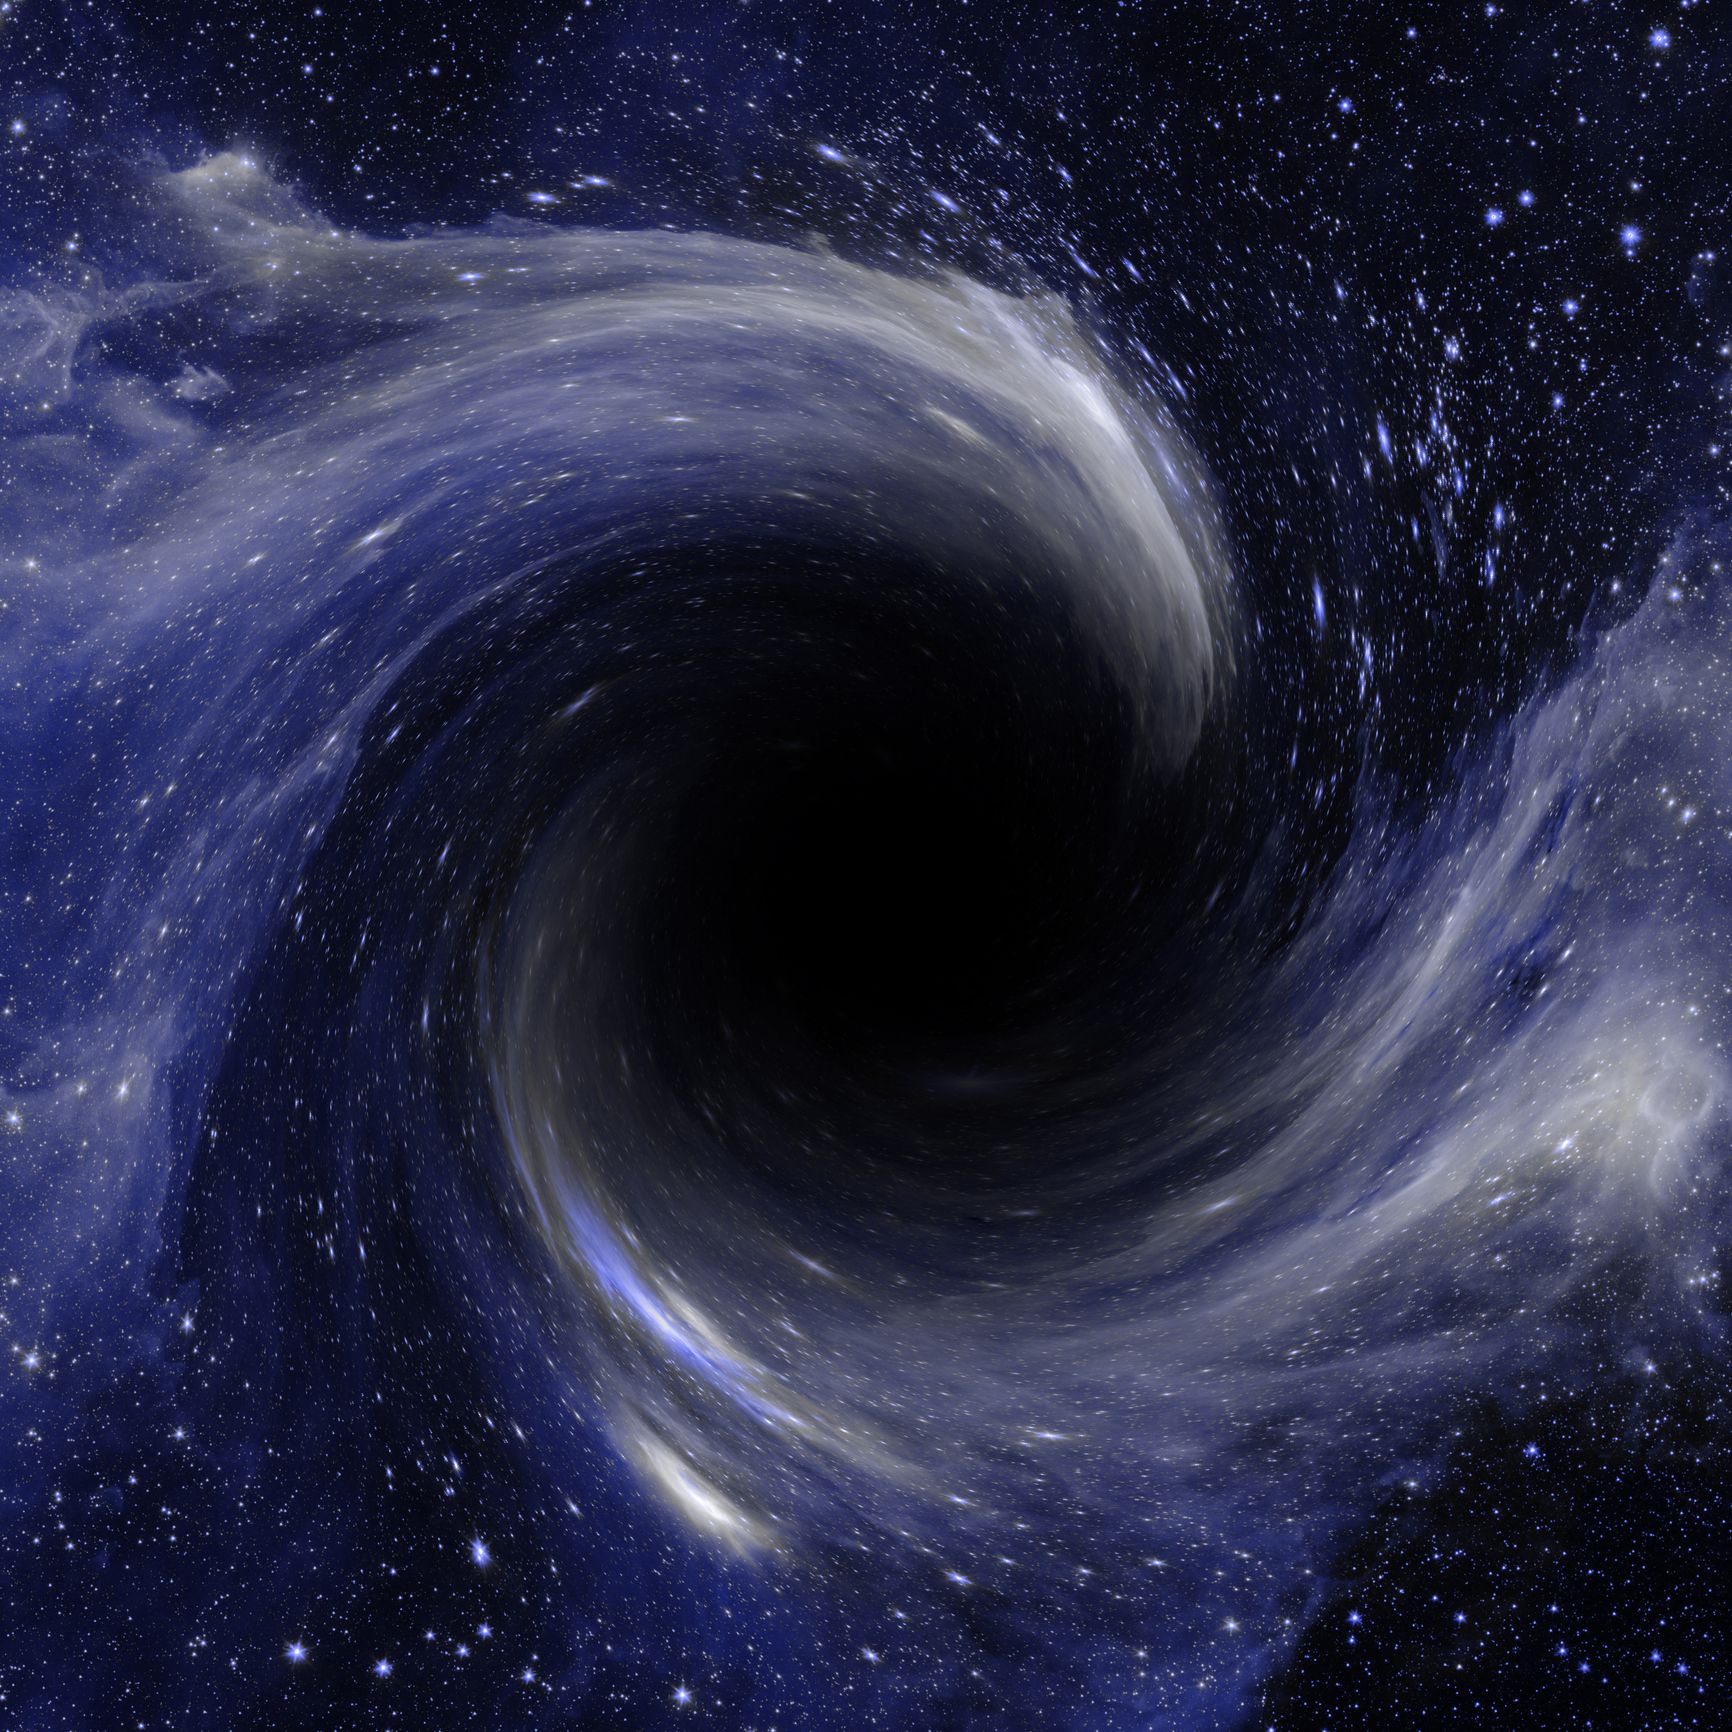 alternative theories to dark matter